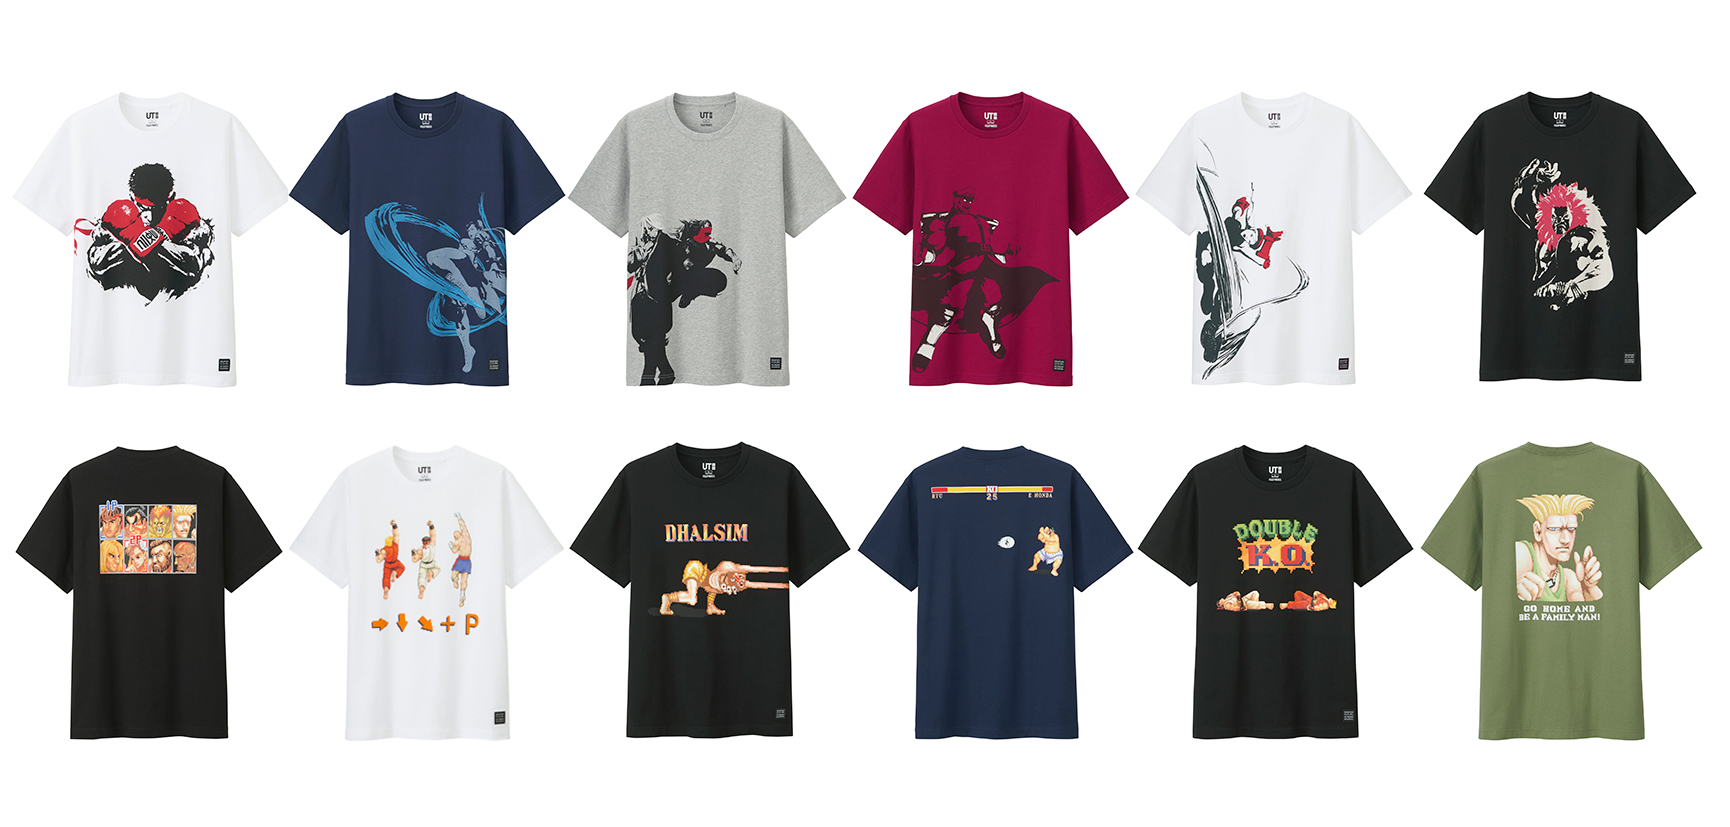 ユニクロ ストii ストv とコラボしたtシャツ全12色柄を発売決定 Game Watch